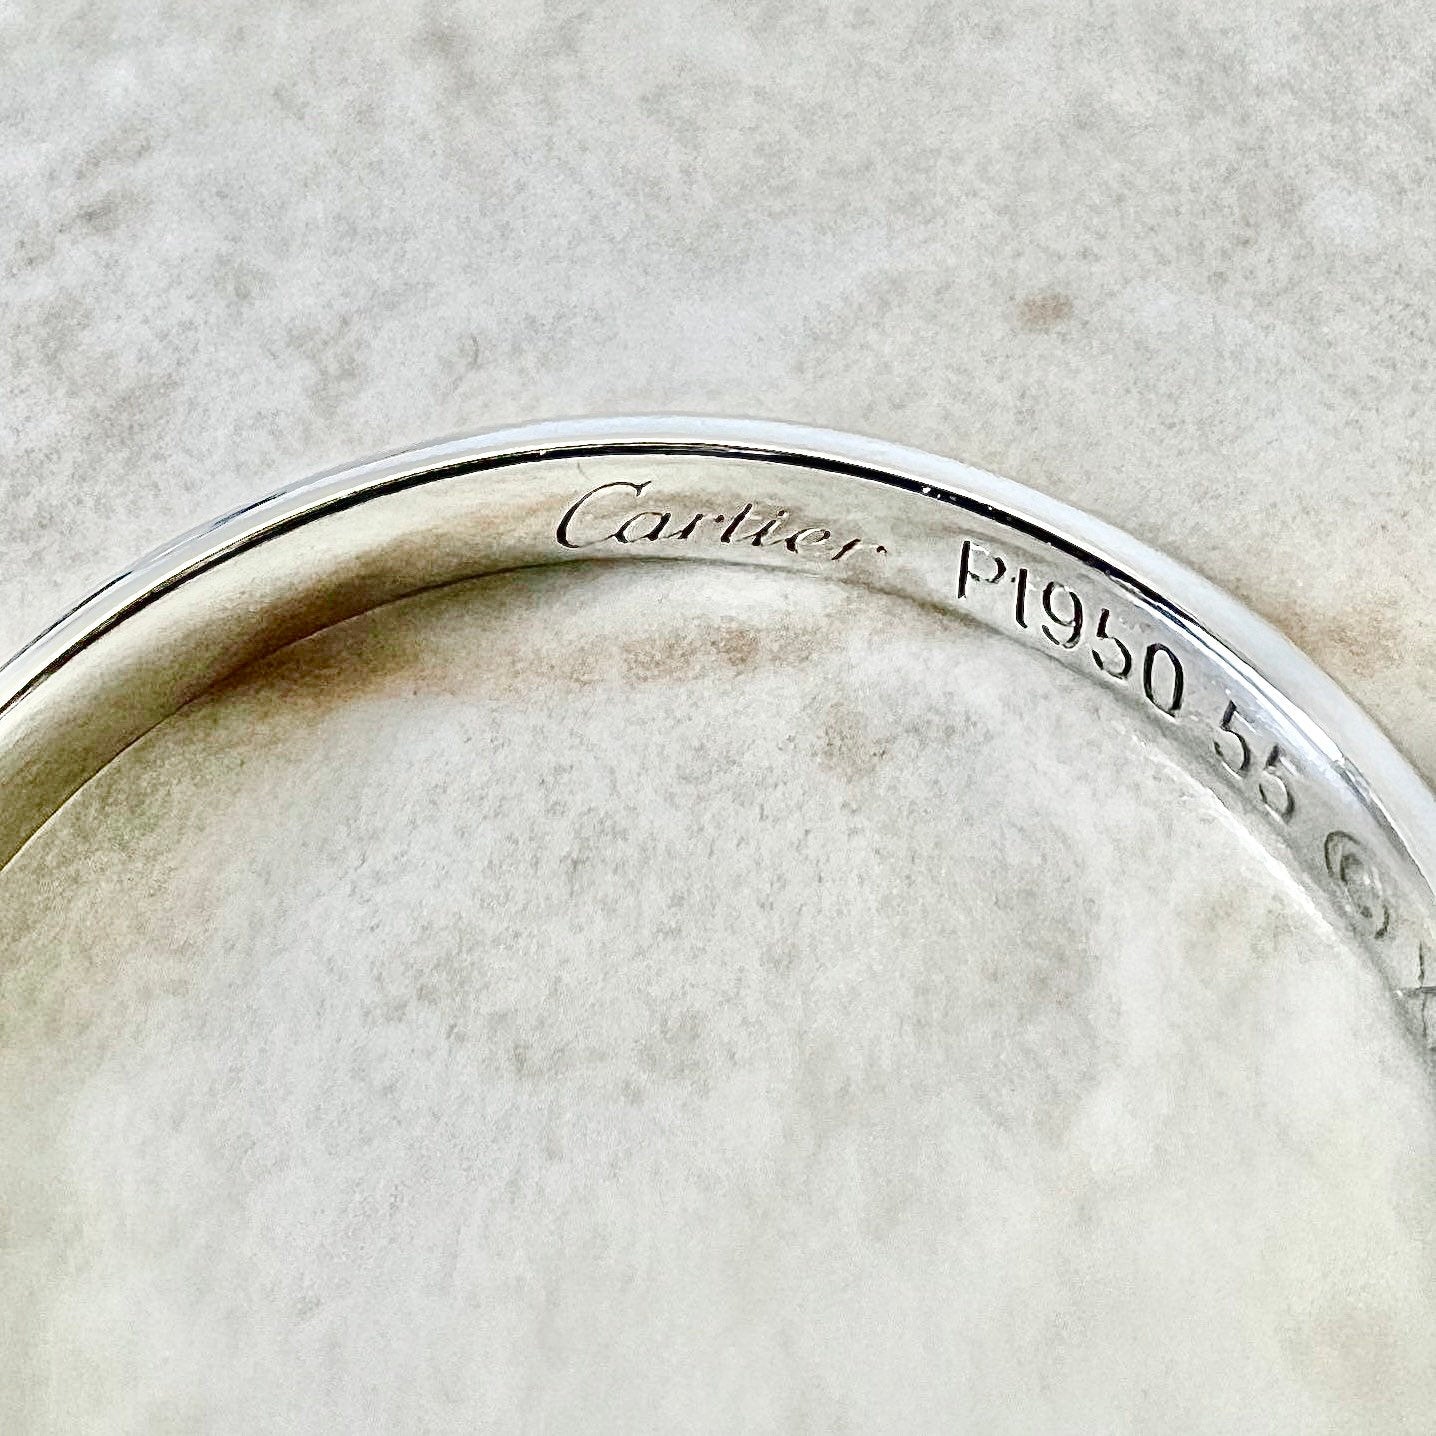 Cartier 1895 Wedding Band 2.5 mm - Platinum Cartier Band Ring - Cartier Wedding Ring - Anniversary Ring - Size 7.25 US / 55 FR